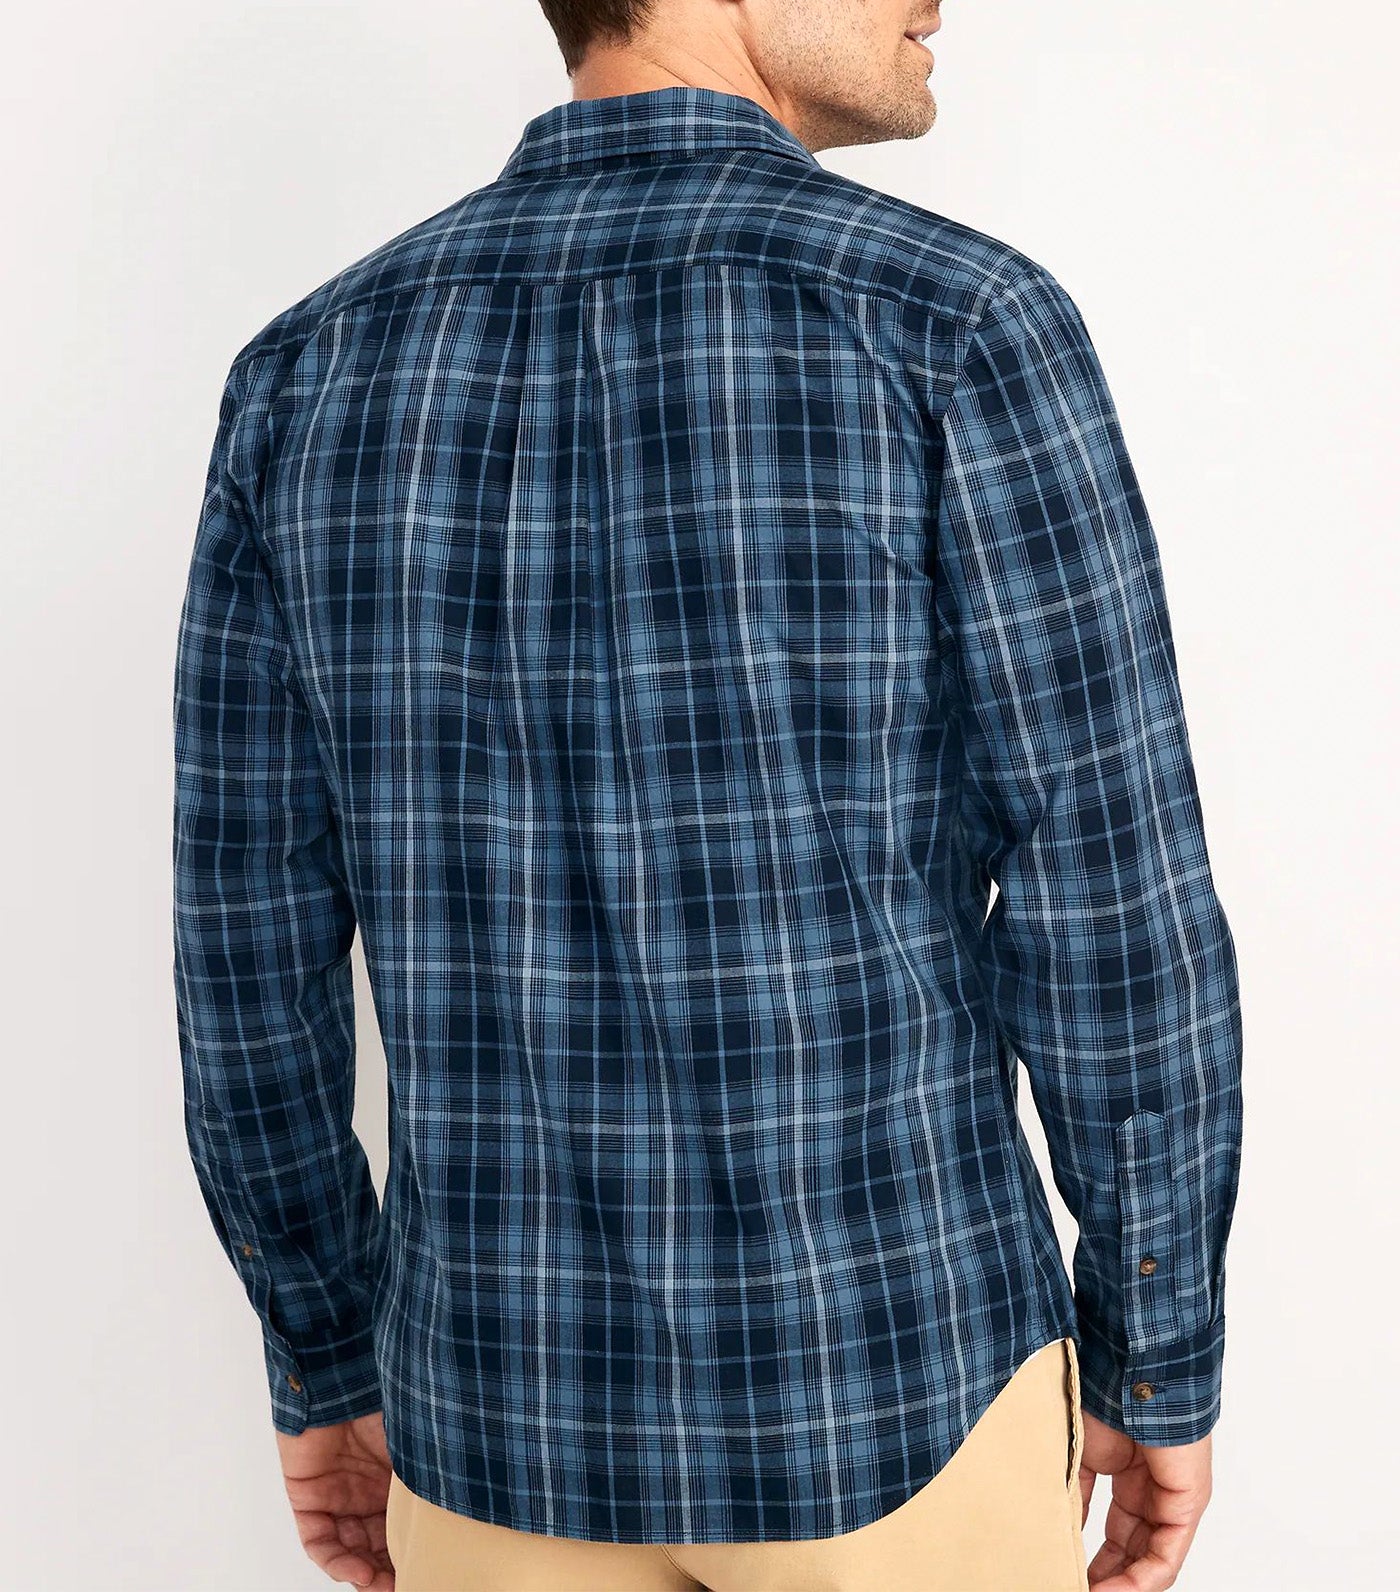 Regular-Fit Built-In Flex Patterned Everyday Shirt for Men Big Blue Plaid